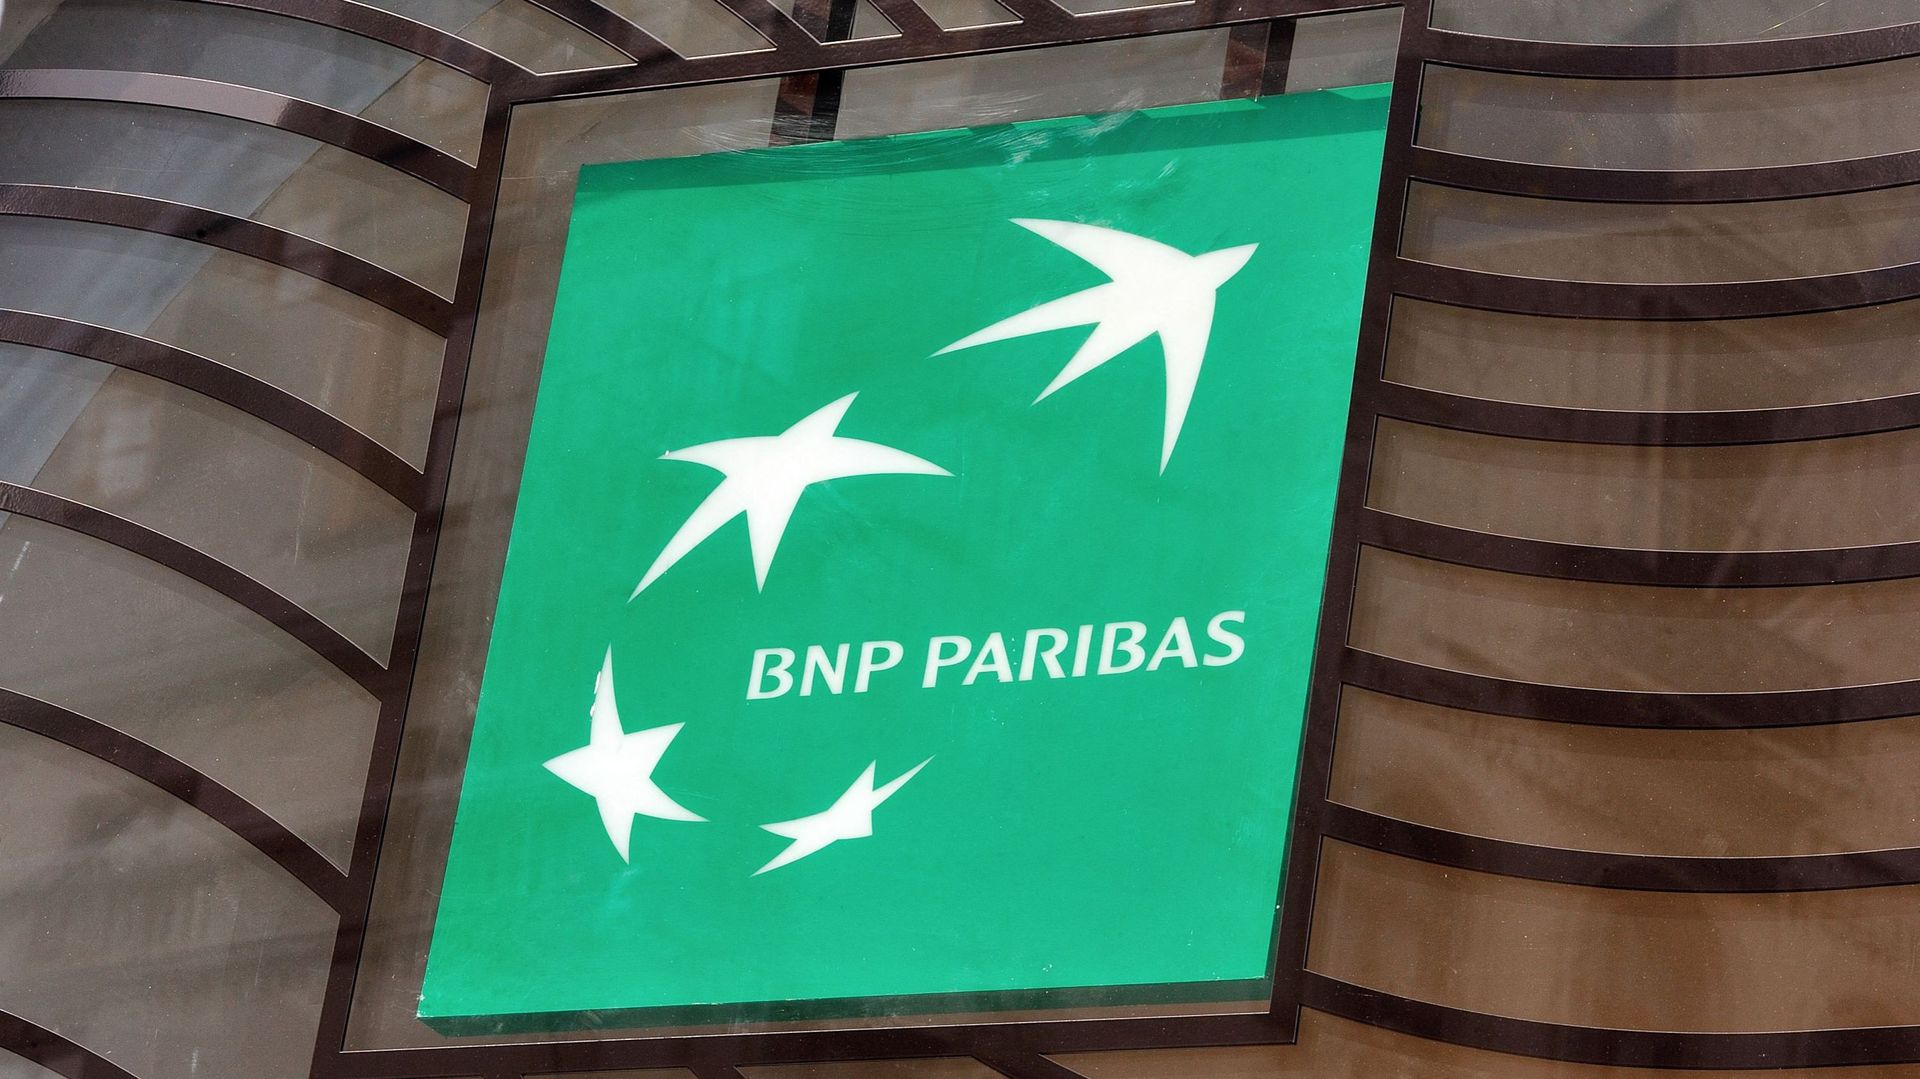 BNP Paribas Fortis réorganise son réseau d’agences en s’appuyant sur Bpost